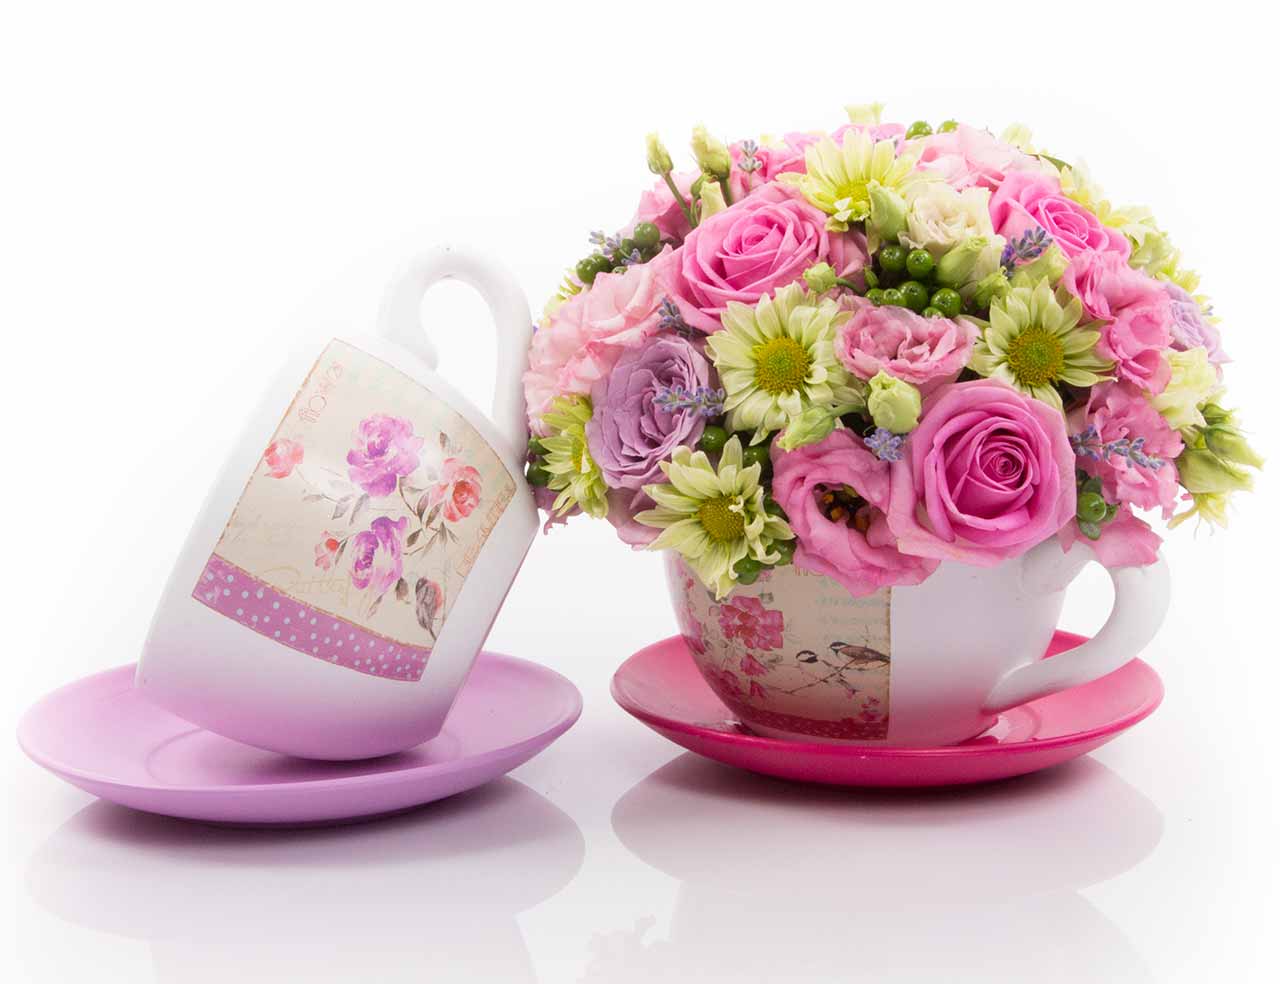 Cana din ceramica cu flori roz